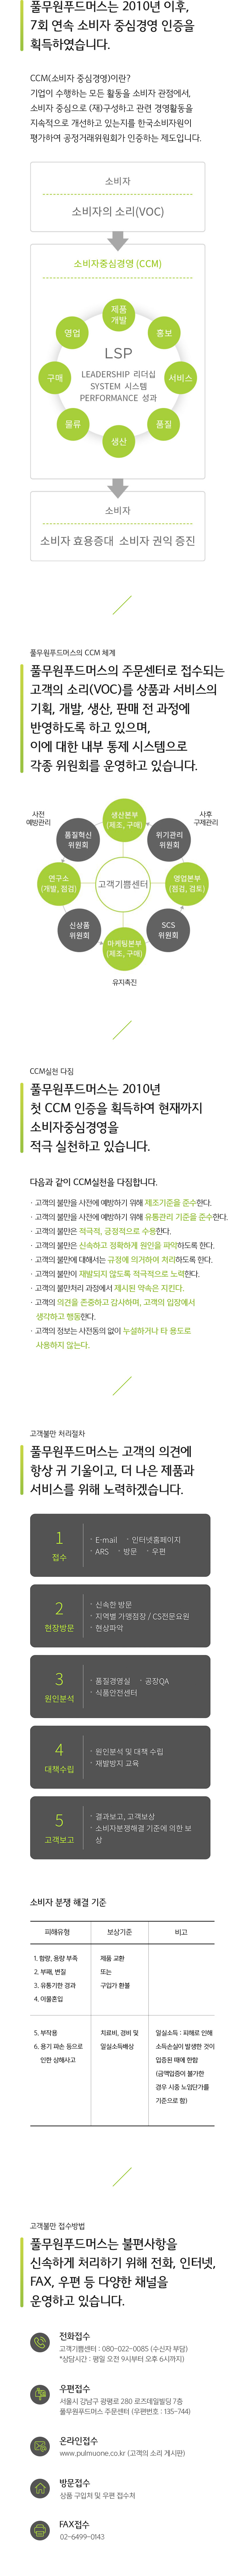 CCM (소비자 중심경영) 모바일